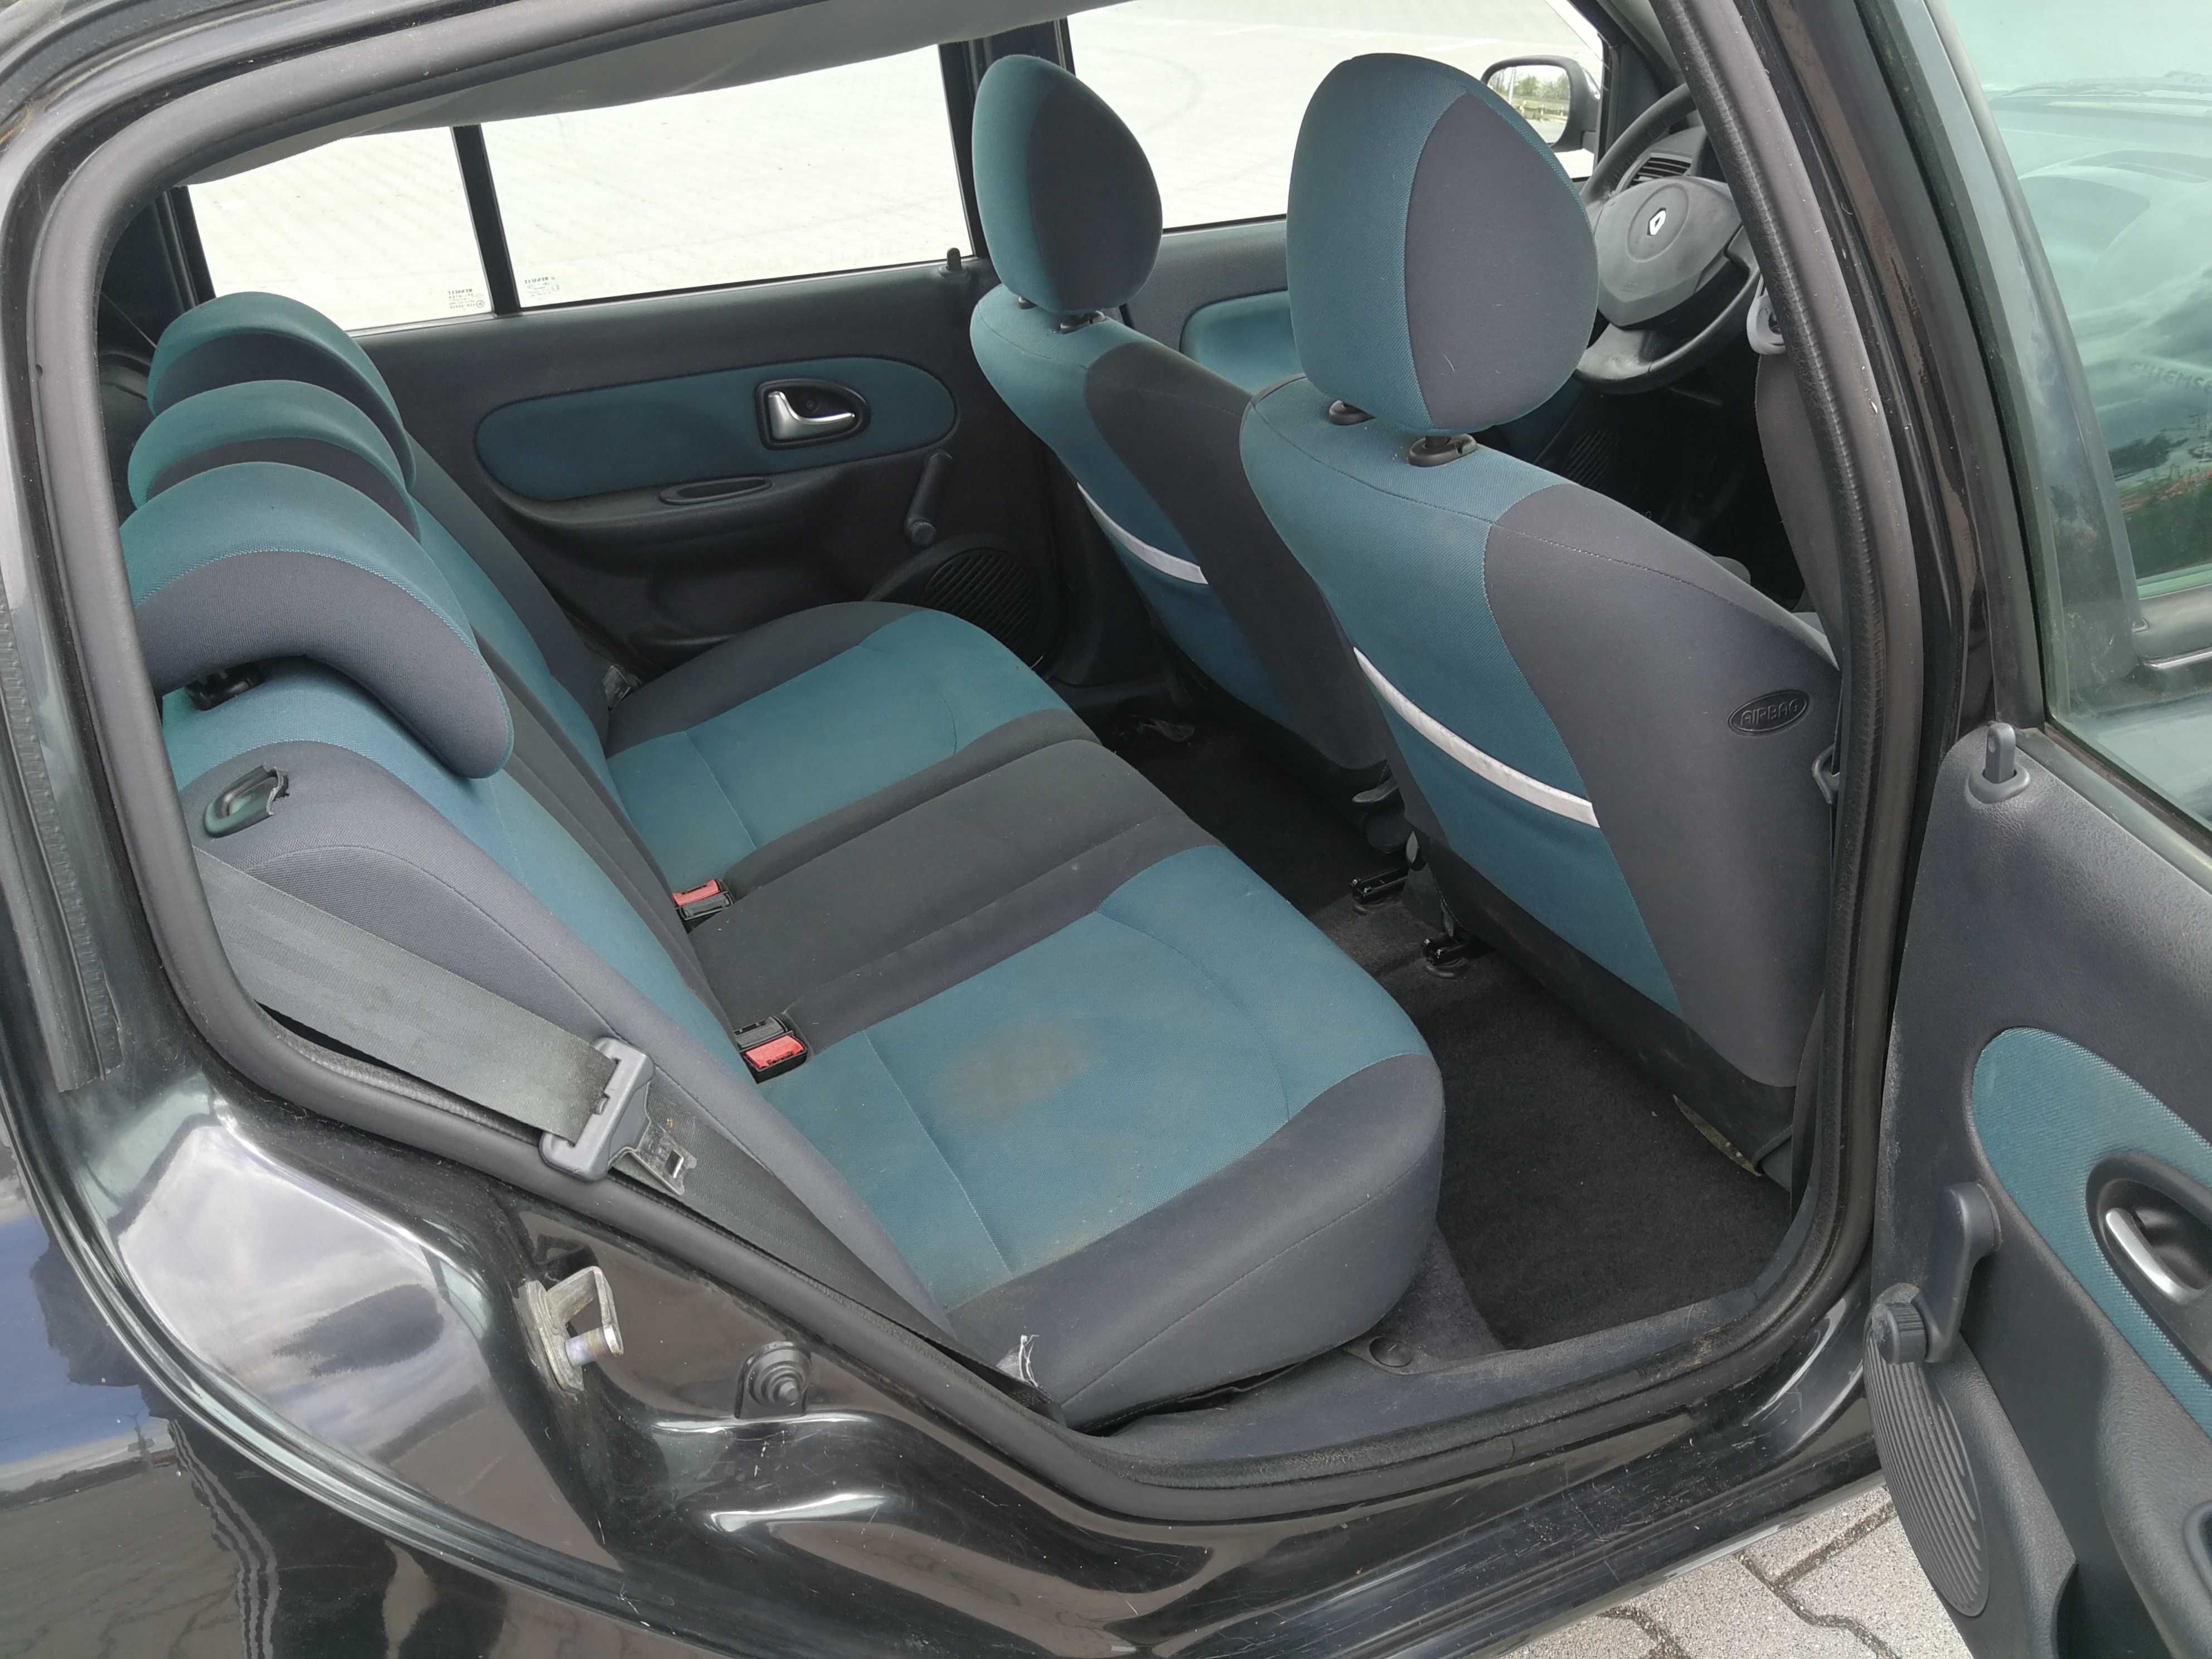 Renault Clio II Lift 1.2 75PS Benzyna.5-Drzwi.Klima.Alumy.WażneOpłaty